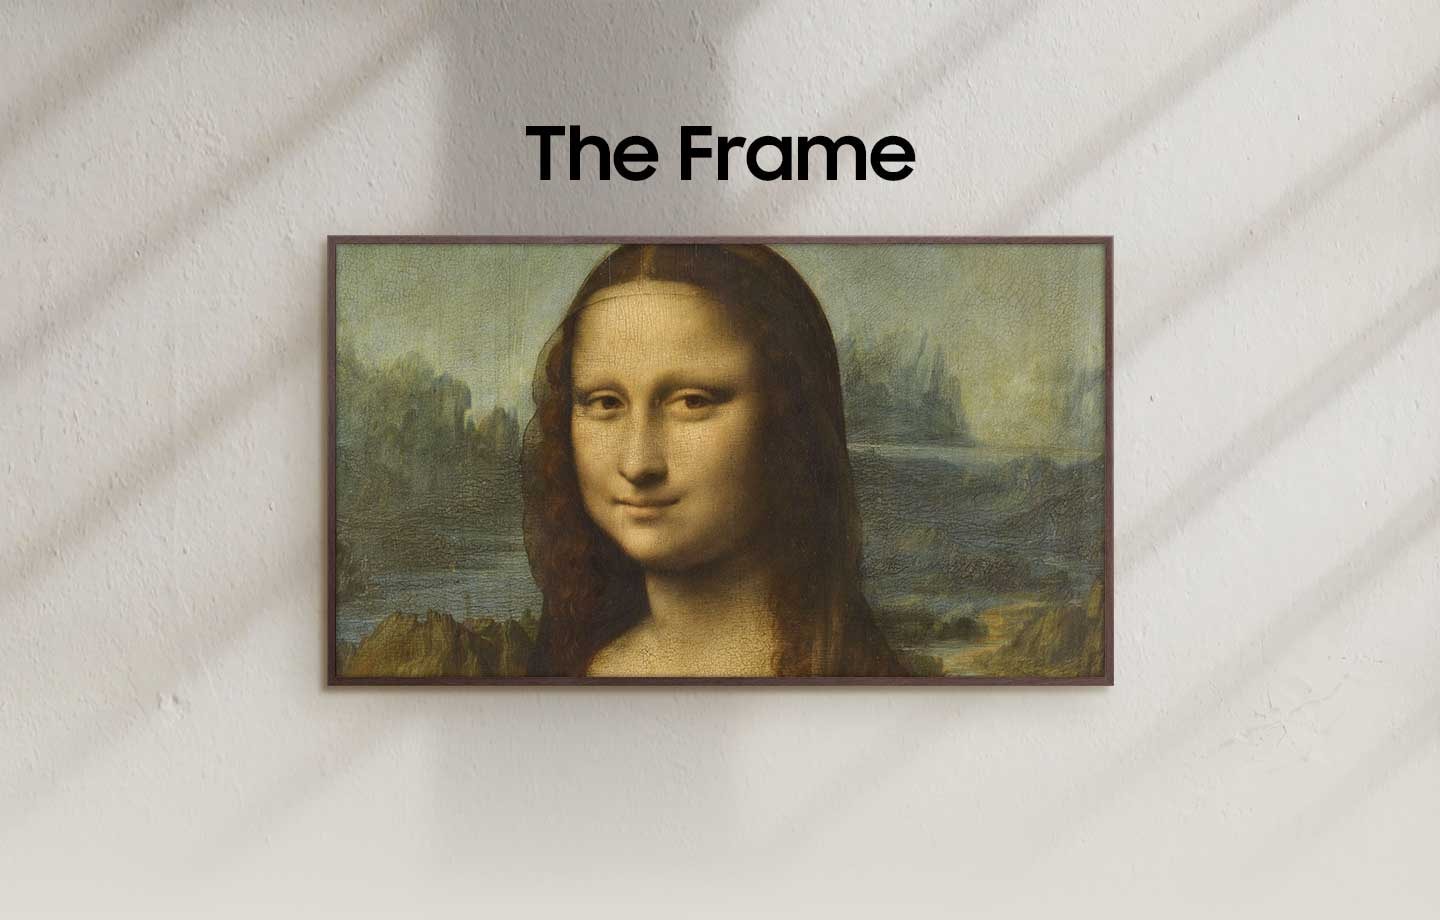 The Frame ekranında Mona Lisa eseri görünmekte.